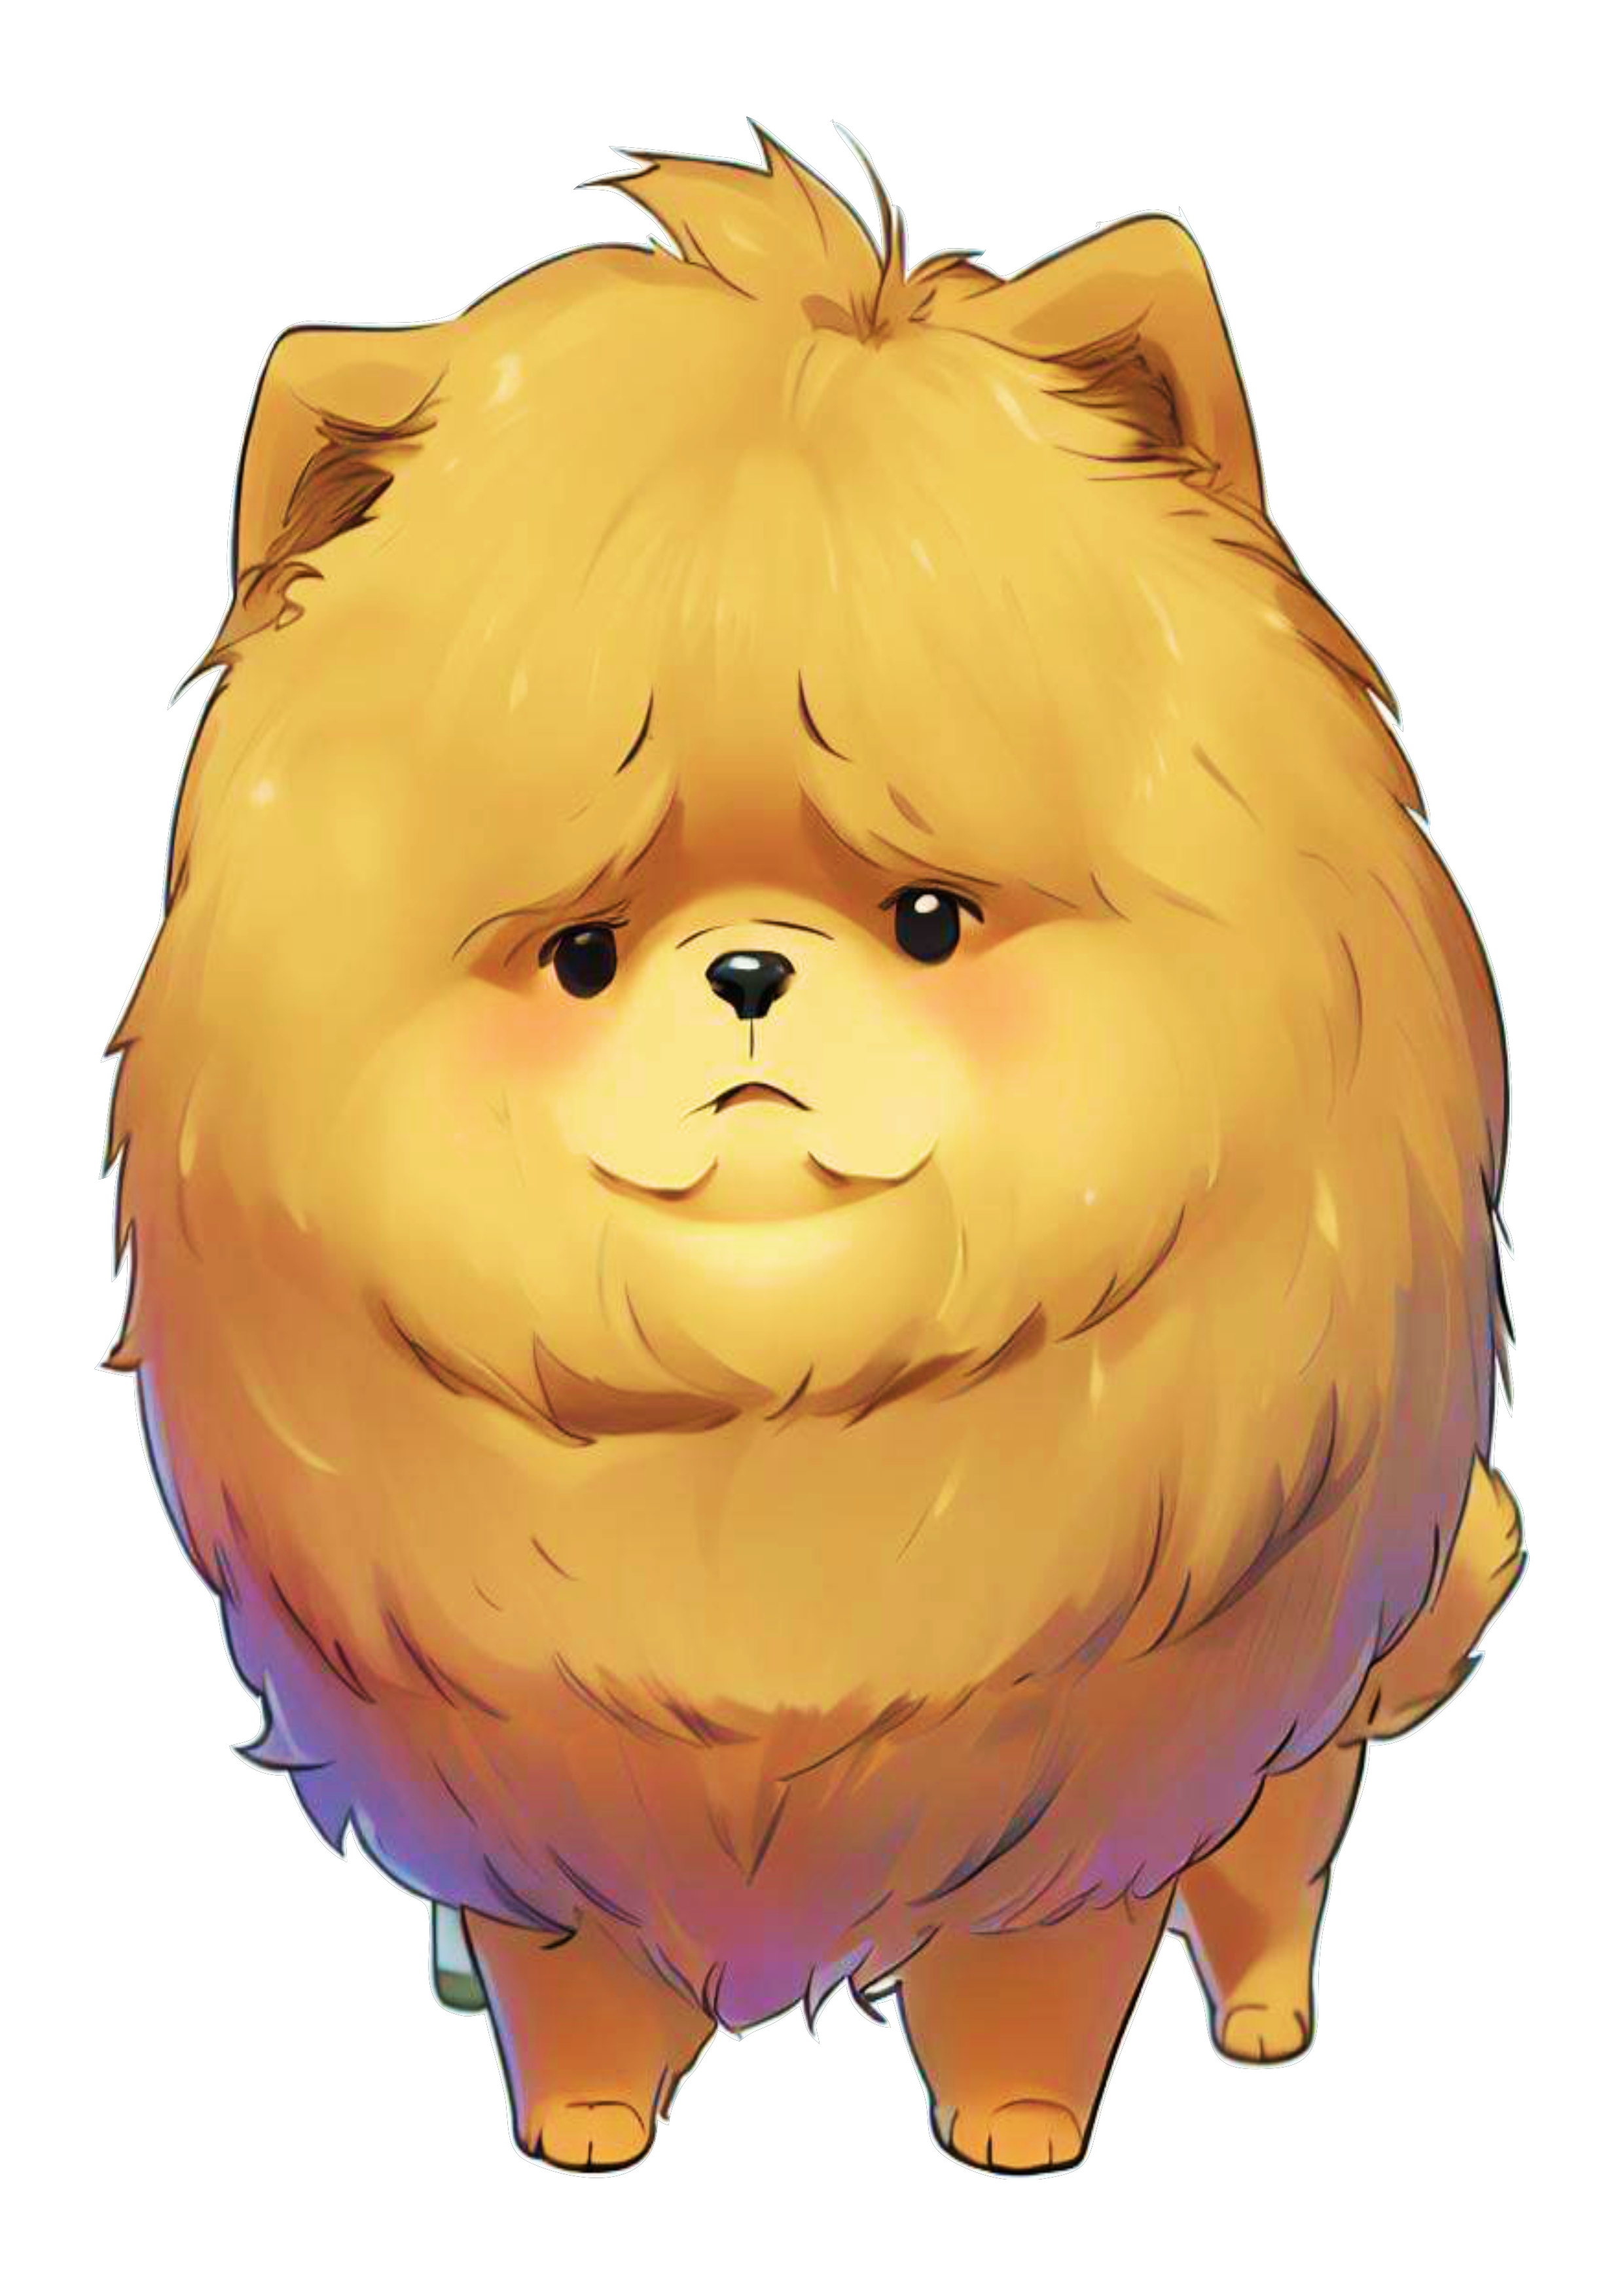 Cachorrinho chow chow fofinho cute desenho simples pet mascote peludo animalzinho artes gráficas petshop bolinha de pelo lindinho png